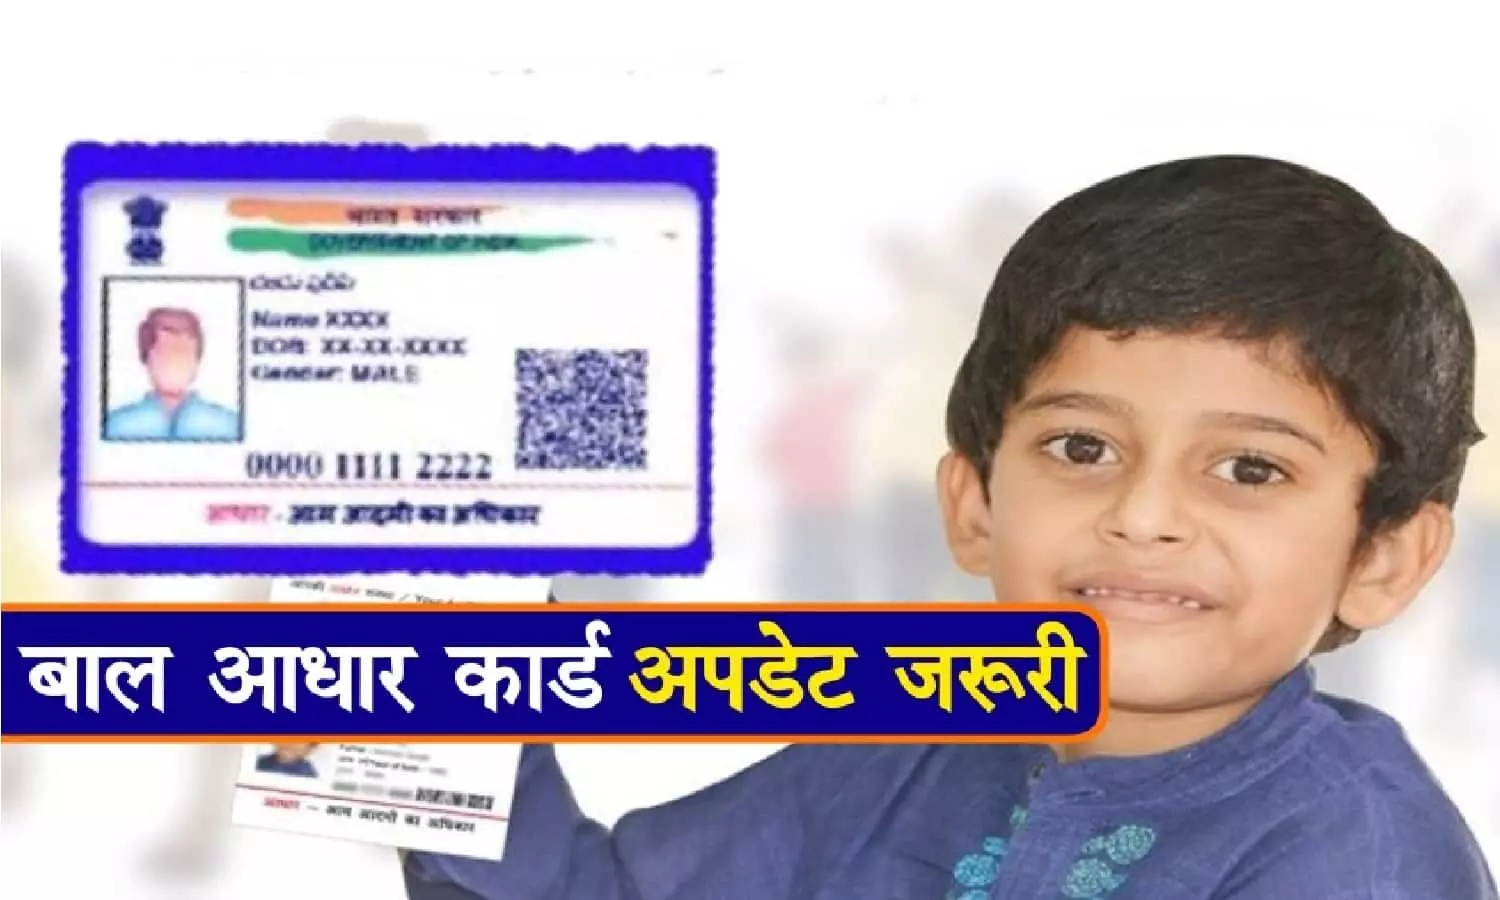 Baal Aadhaar Card: बाल आधार कार्ड बनाने का ये है आसान तरीका, जानिए!